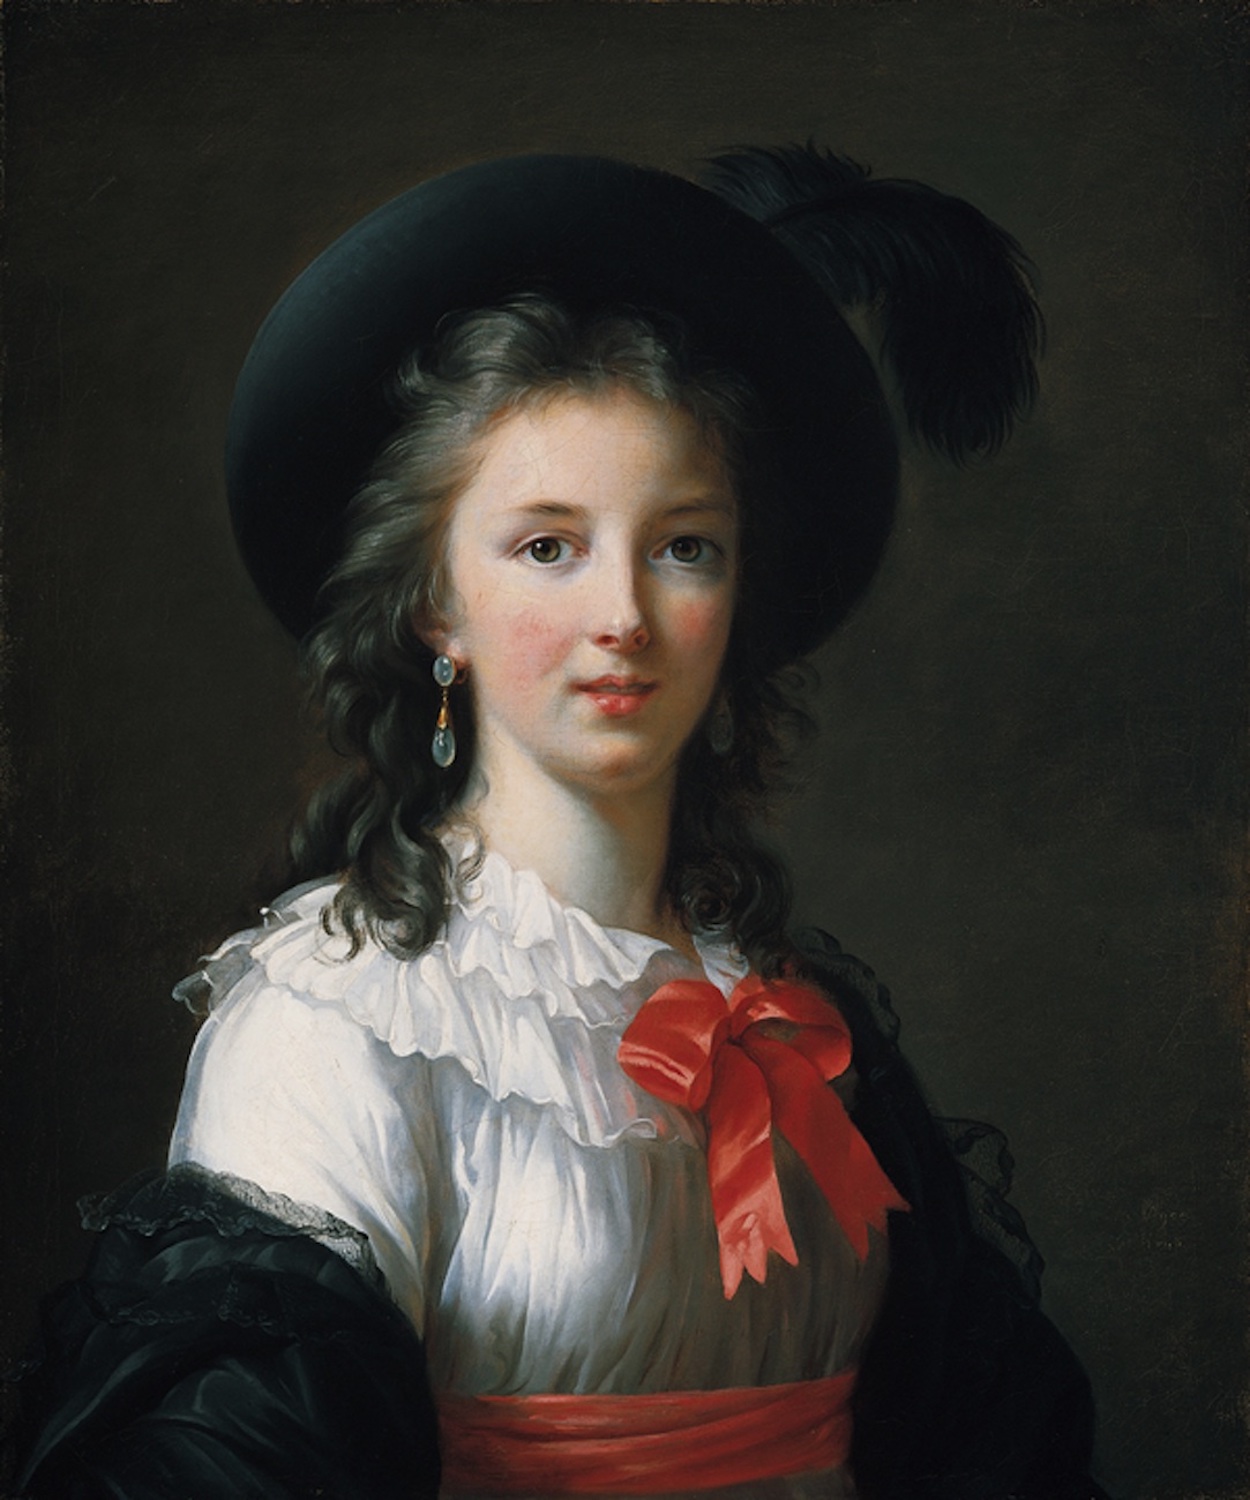 Zelf-Portret by Élisabeth Vigee Le Brun - c. 1781 - 64,8 x 54 cm 